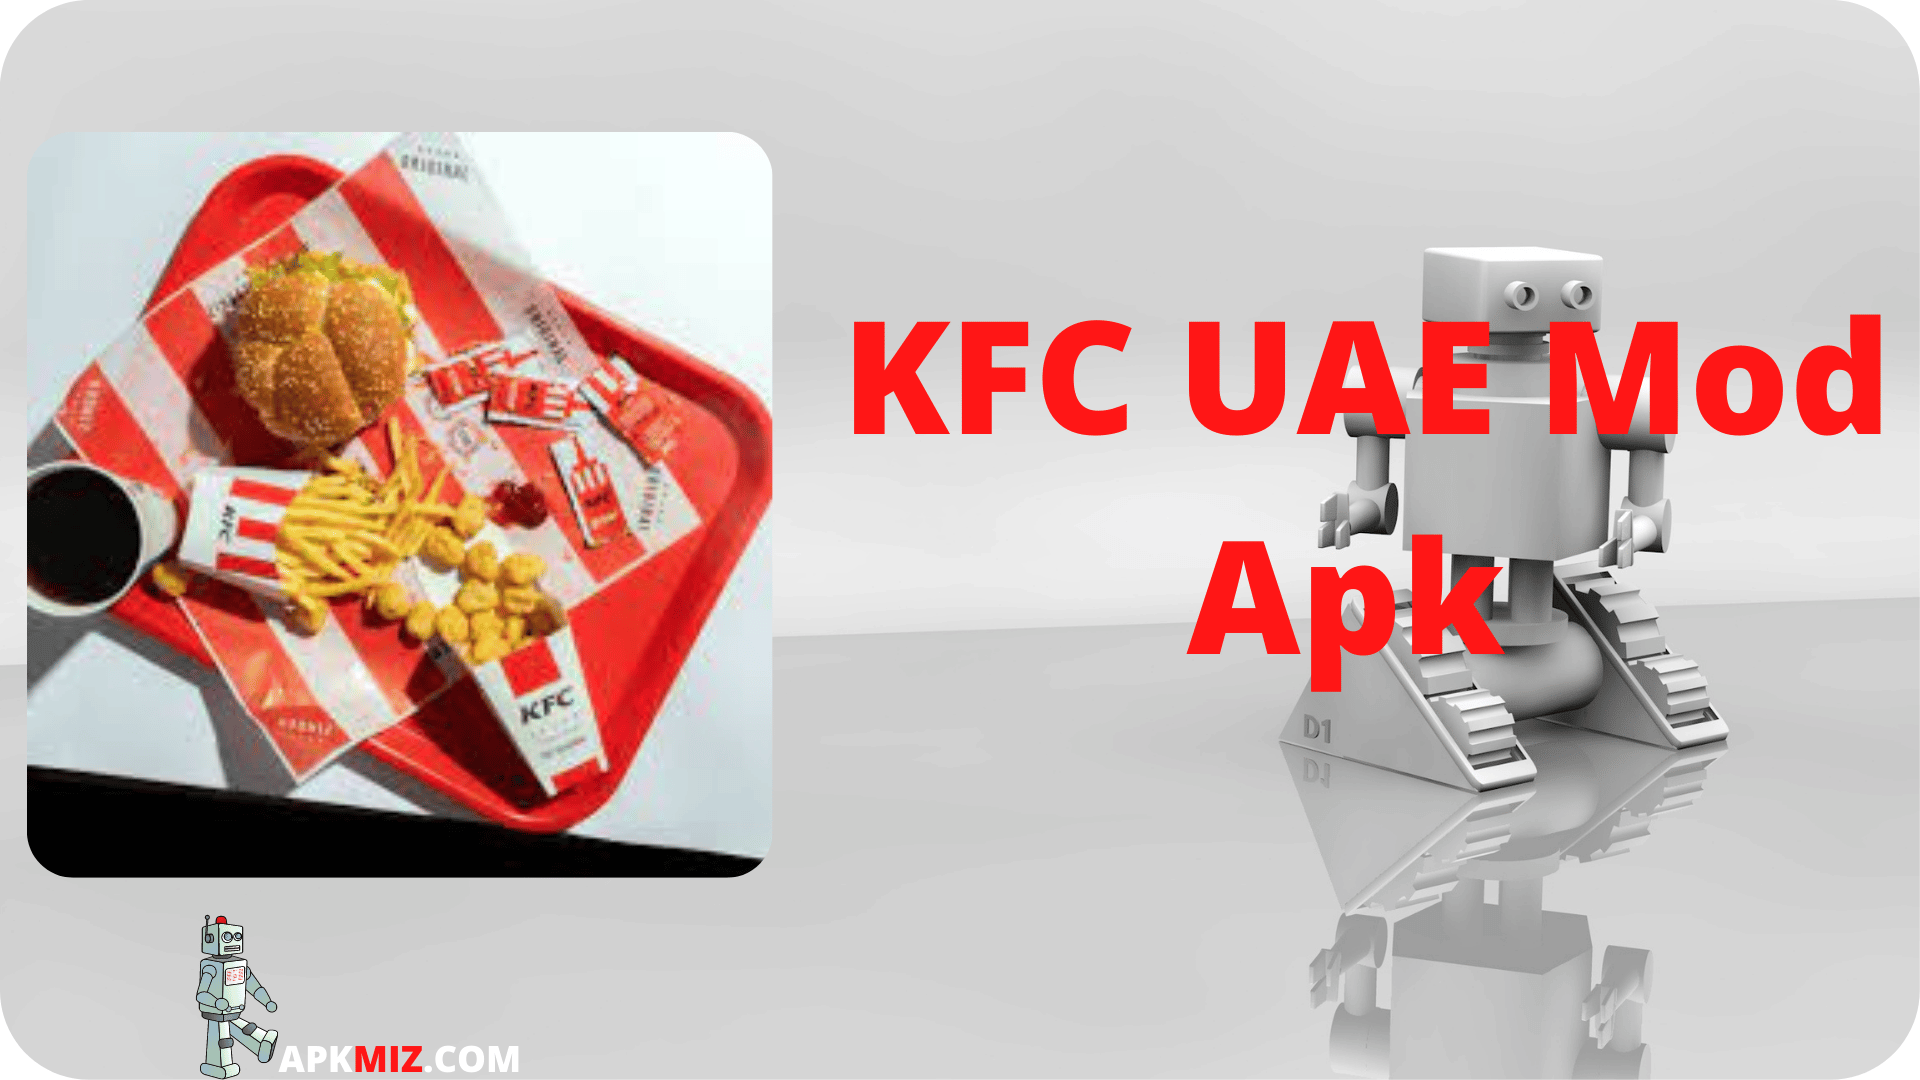 KFC UAE Mod Apk